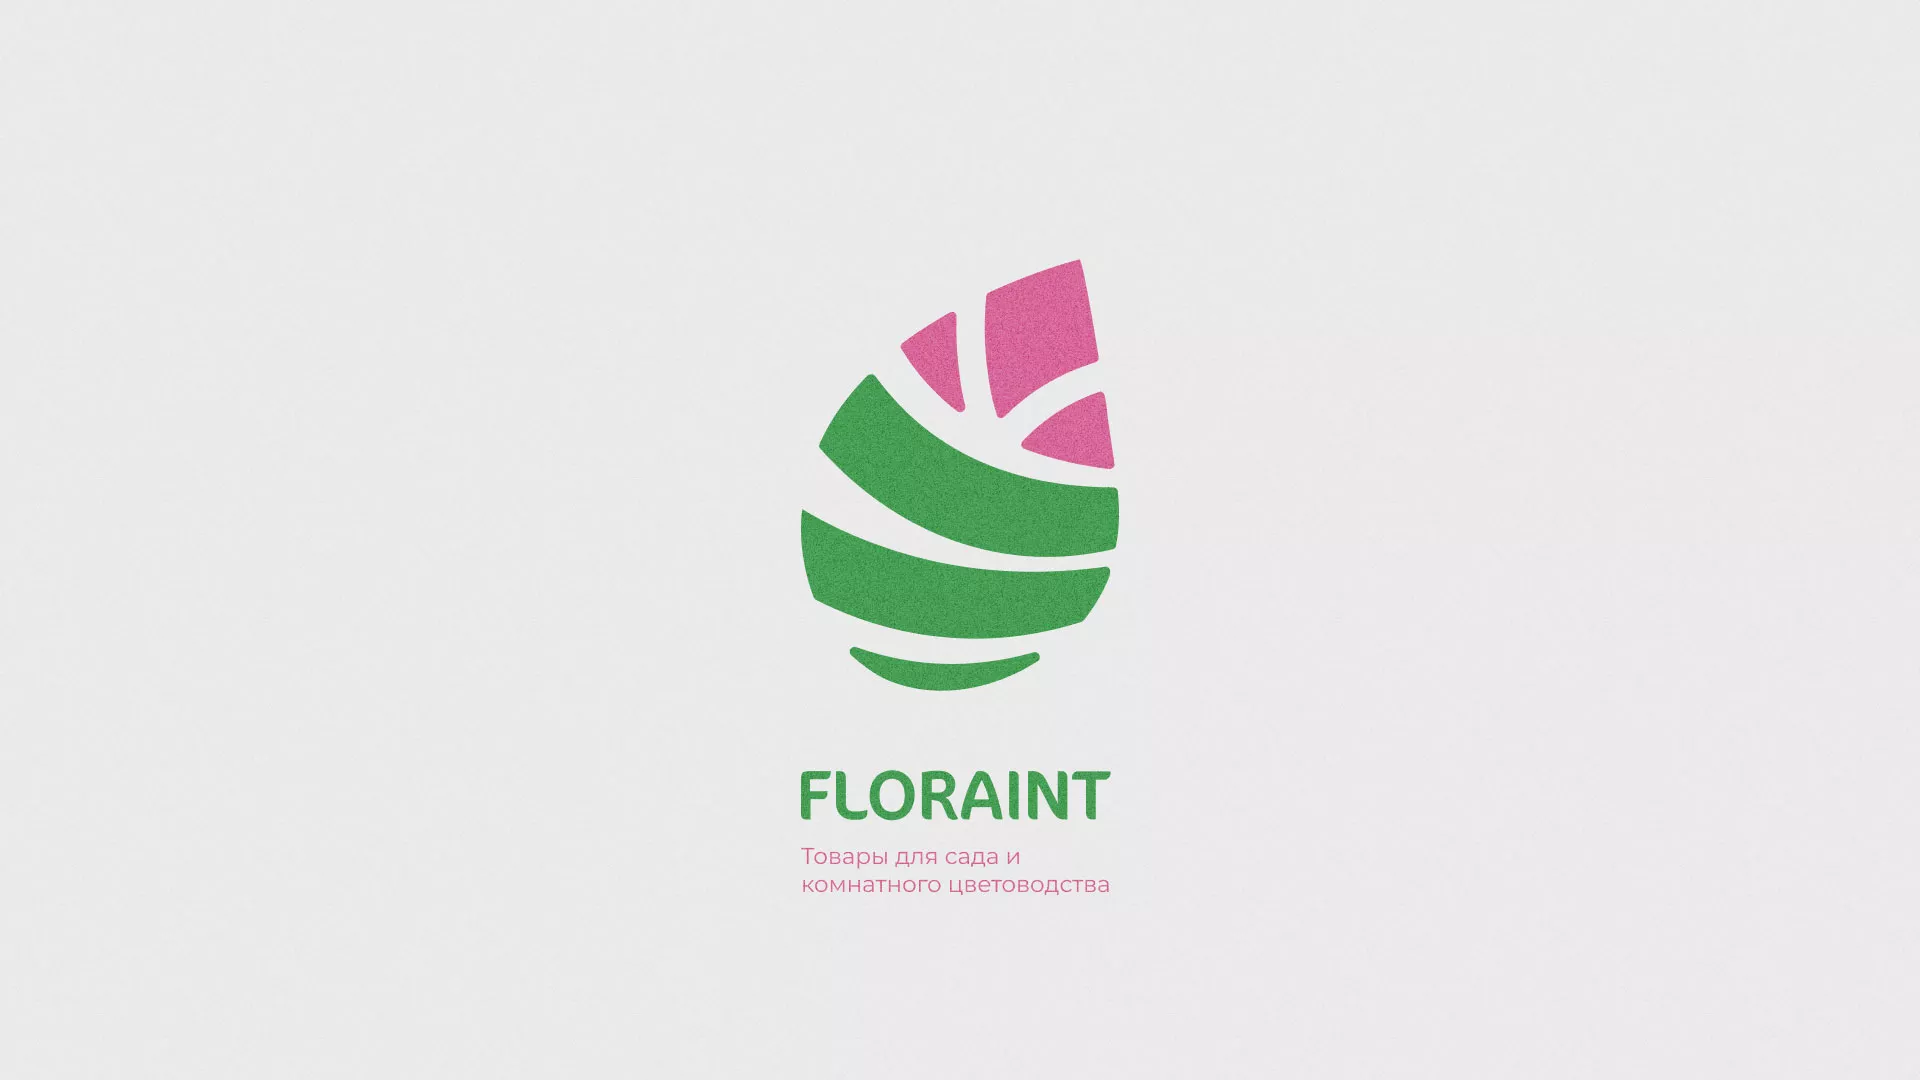 Разработка оформления профиля Instagram для магазина «Floraint» в Белокурихе